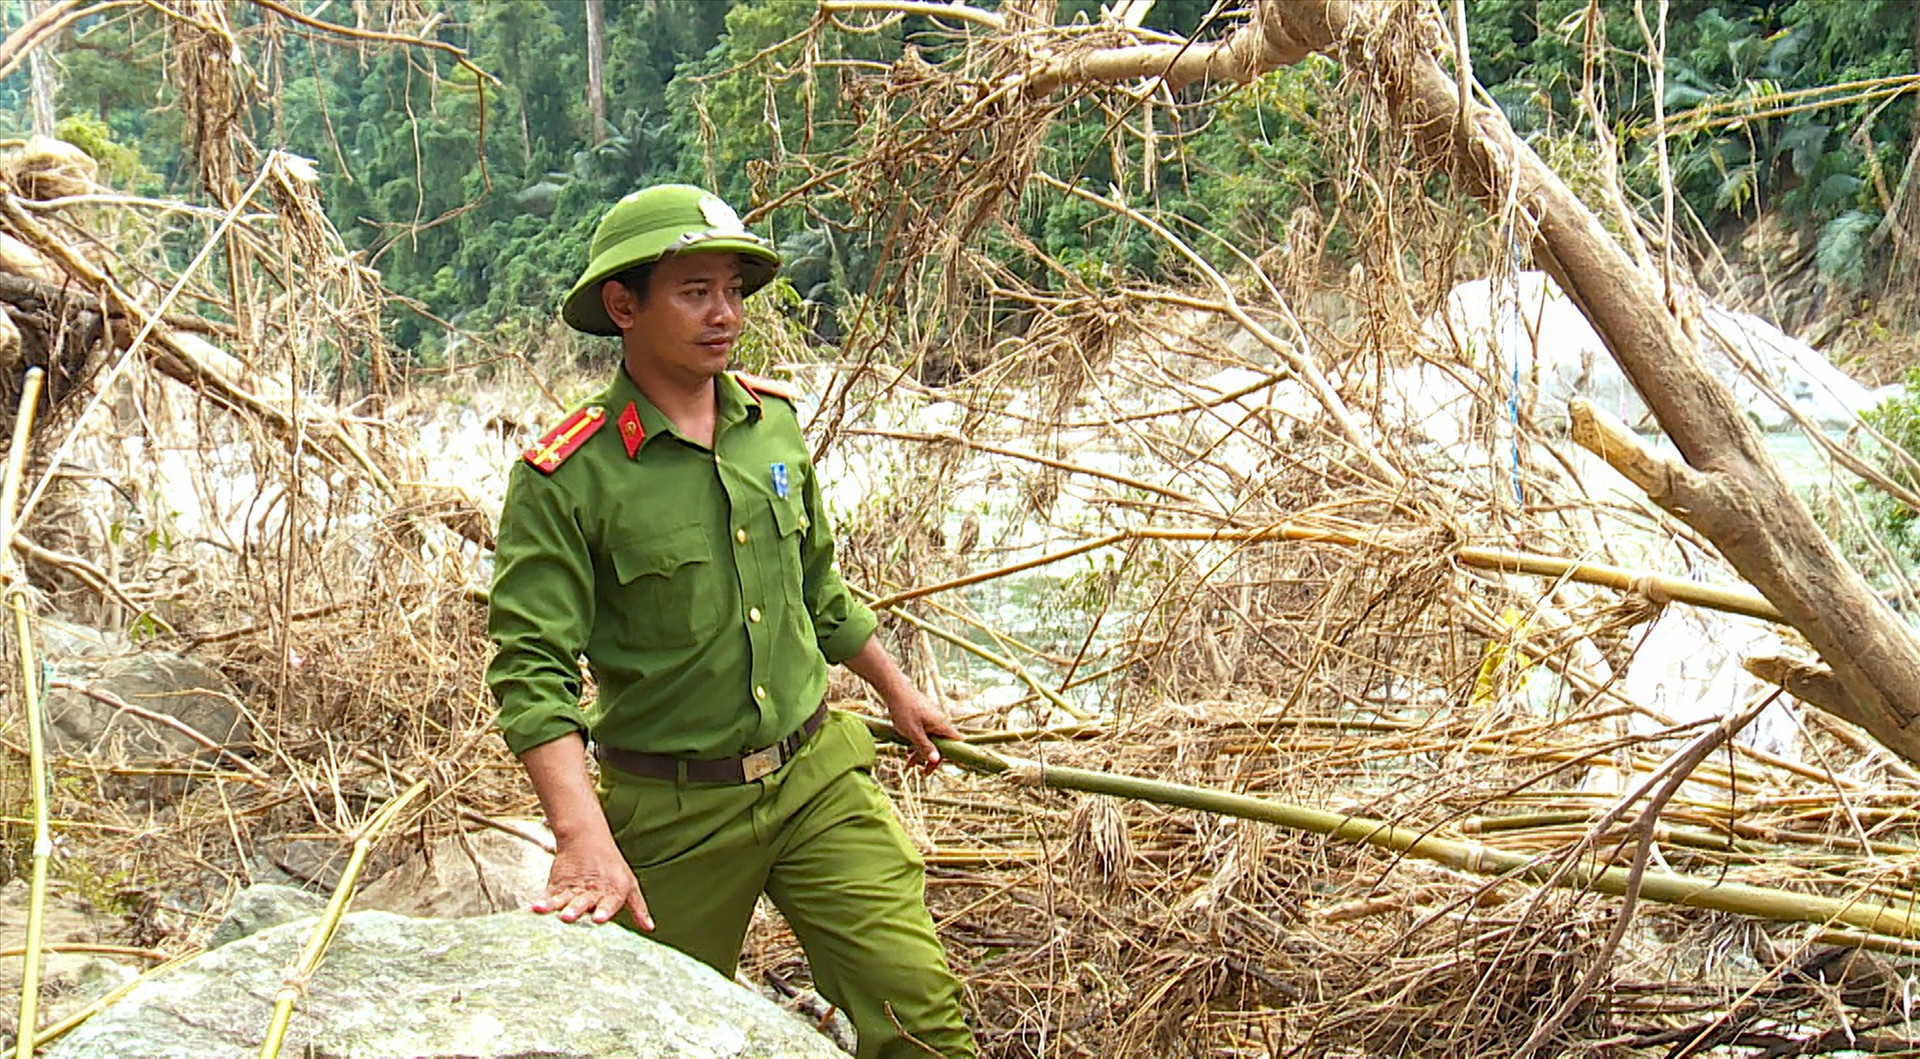 Thượng úy Lê Minh Phước - Trưởng Công an xã Trà Leng đang tìm kiếm các nạn nhân mất tích dọc theo khu vực sông Leng. Ảnh: HỒ QUÂN